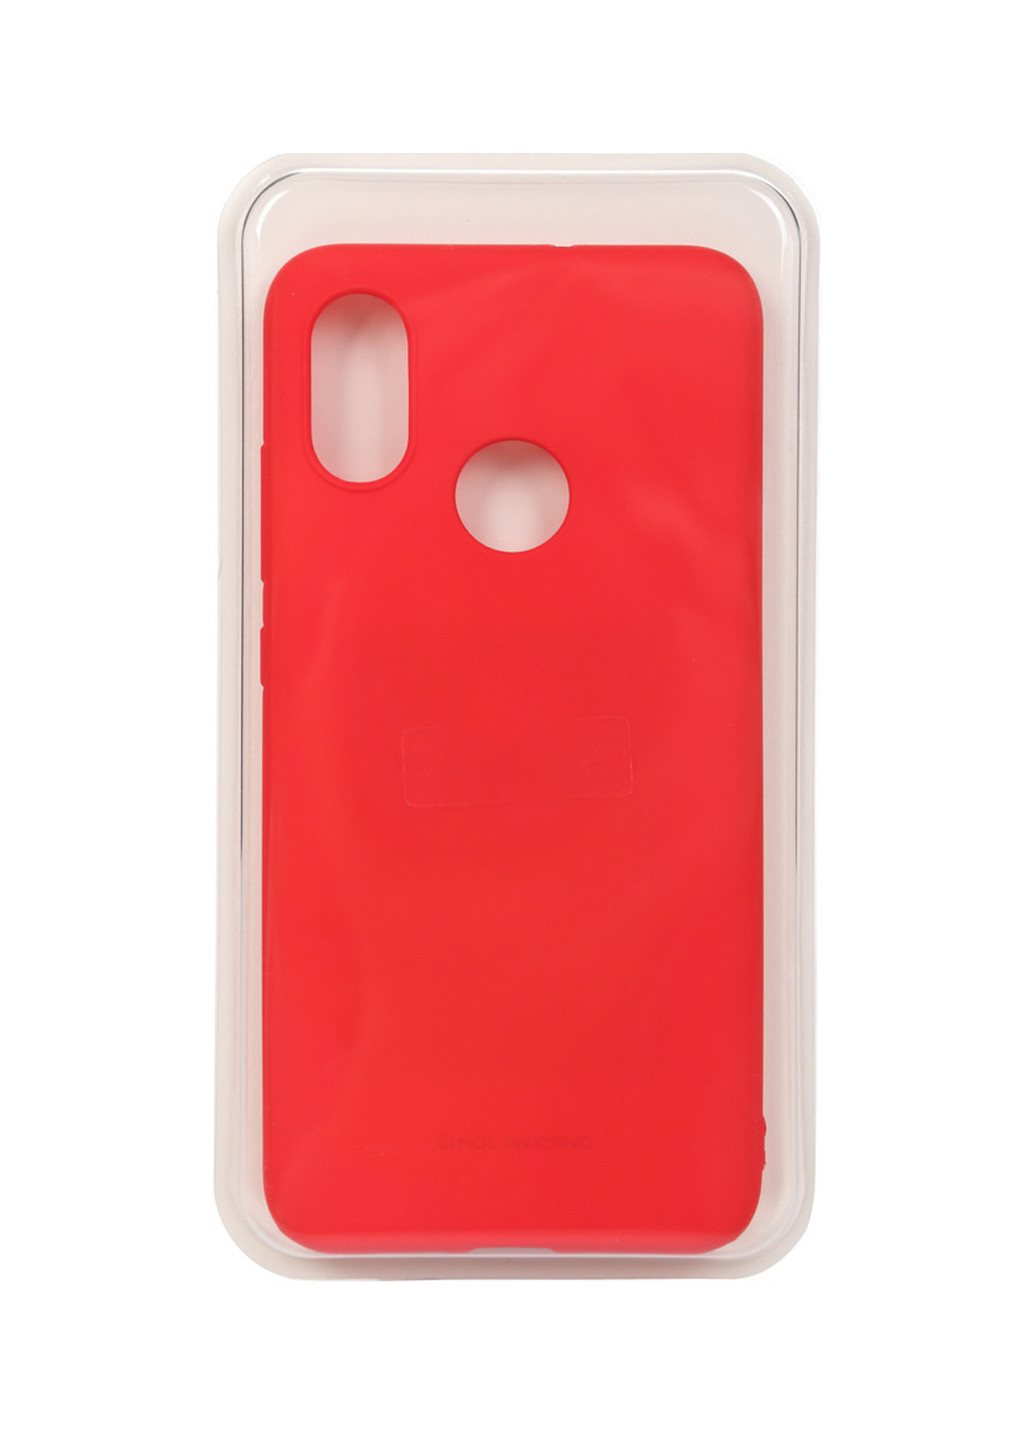 Панель Matte Slim TPU для Xiaomi Mi 8 Red (702706) BeCover matte slim tpu для xiaomi mi 8 red (702706) (147838083)